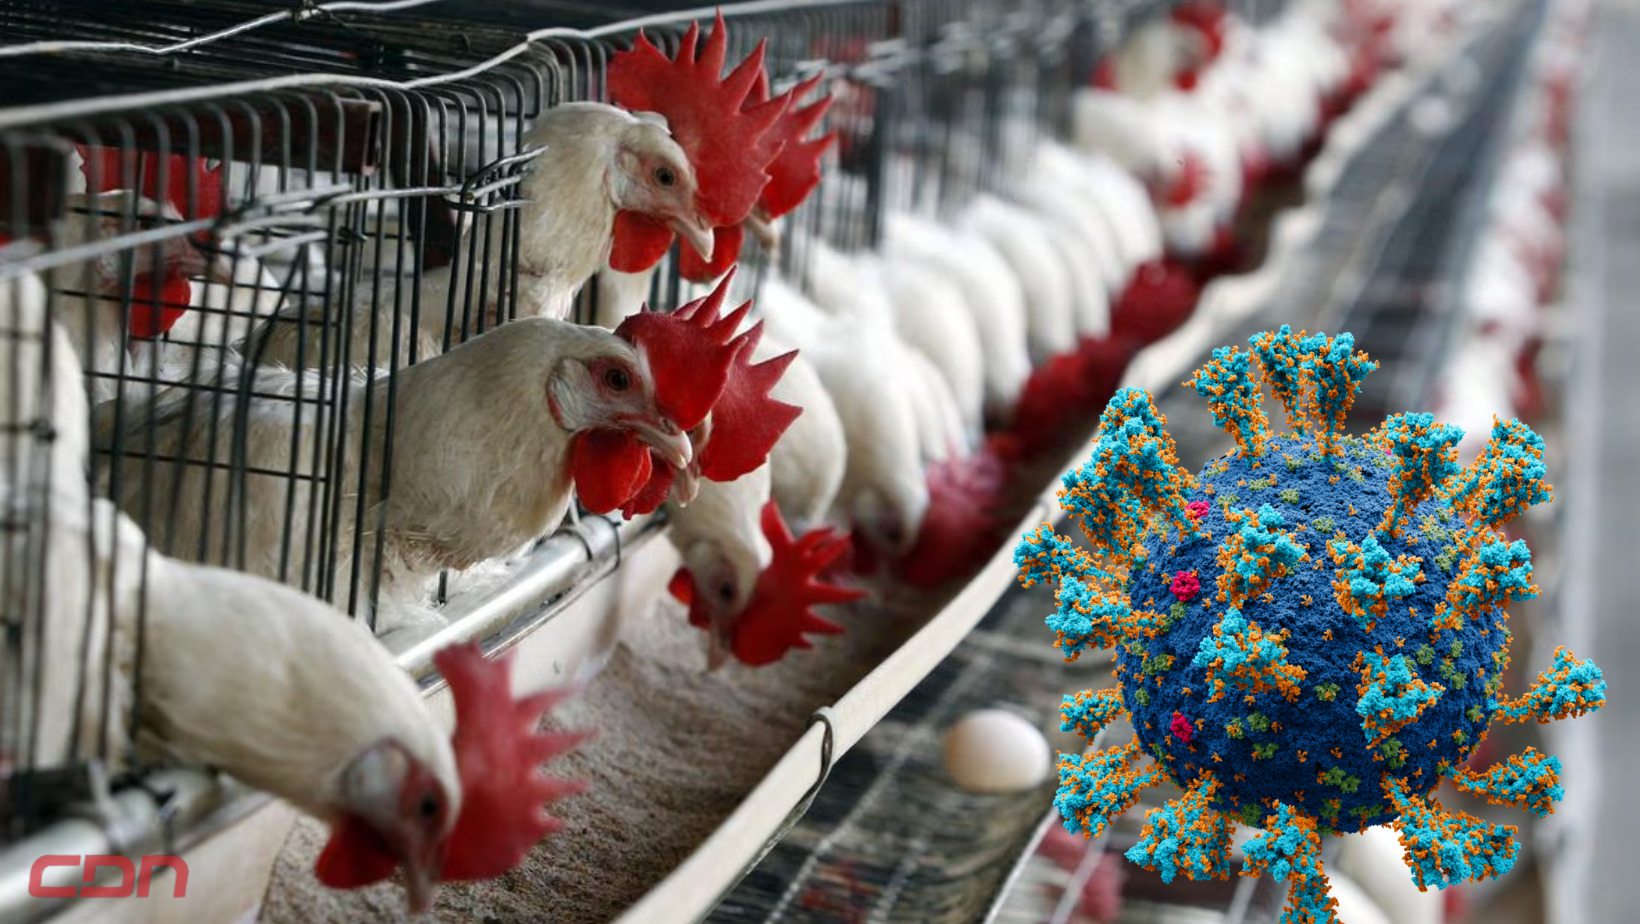 Gripe aviar puede llegar a ser '100 veces peor' que el covid-19. Foto: CDN Digital